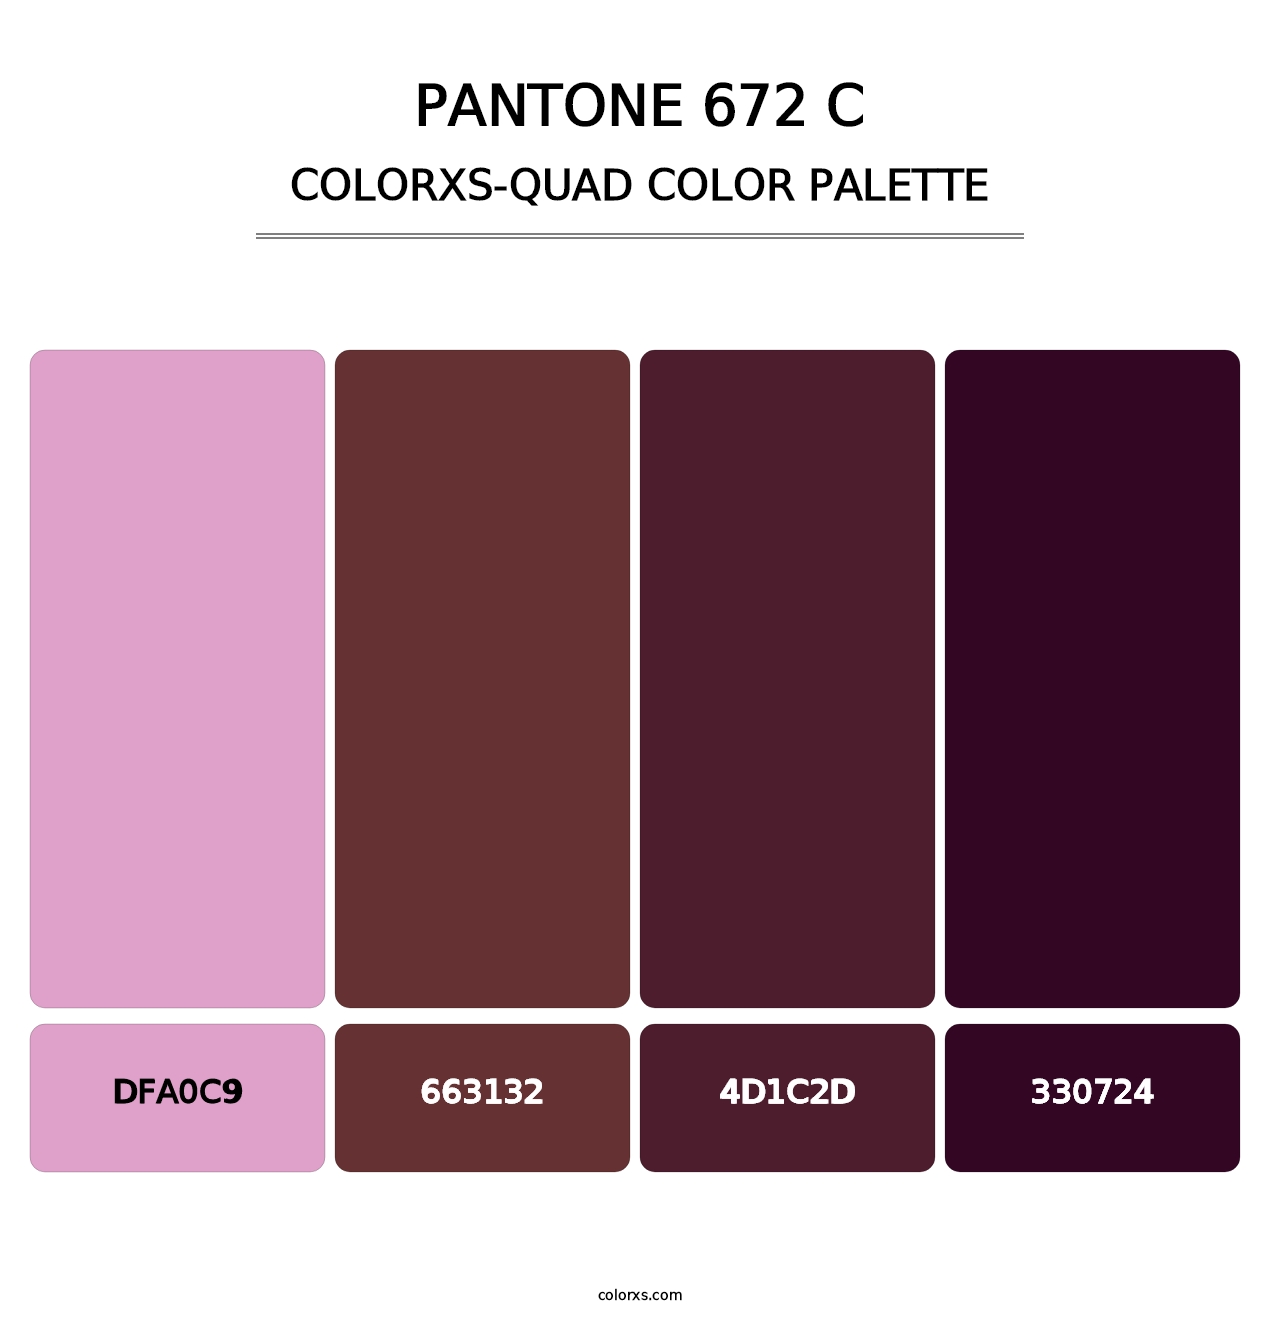 PANTONE 672 C - Colorxs Quad Palette